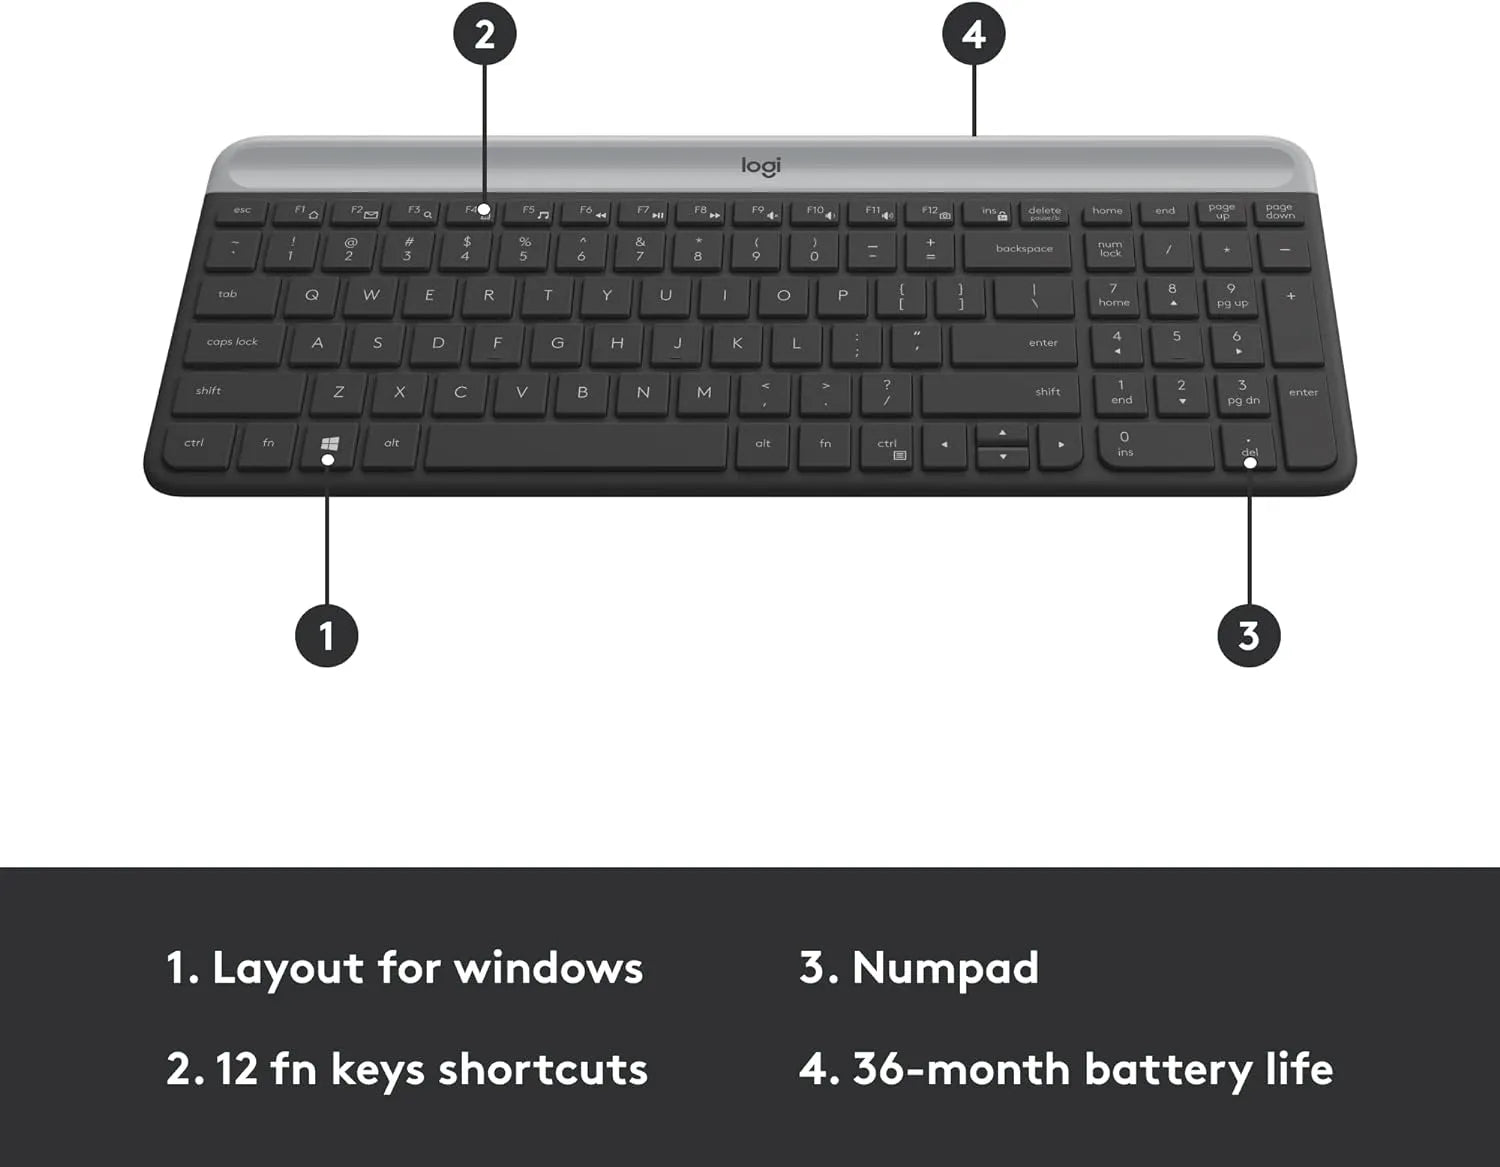 Logitech MK470 Slim Combo wireless keyboard and mouse